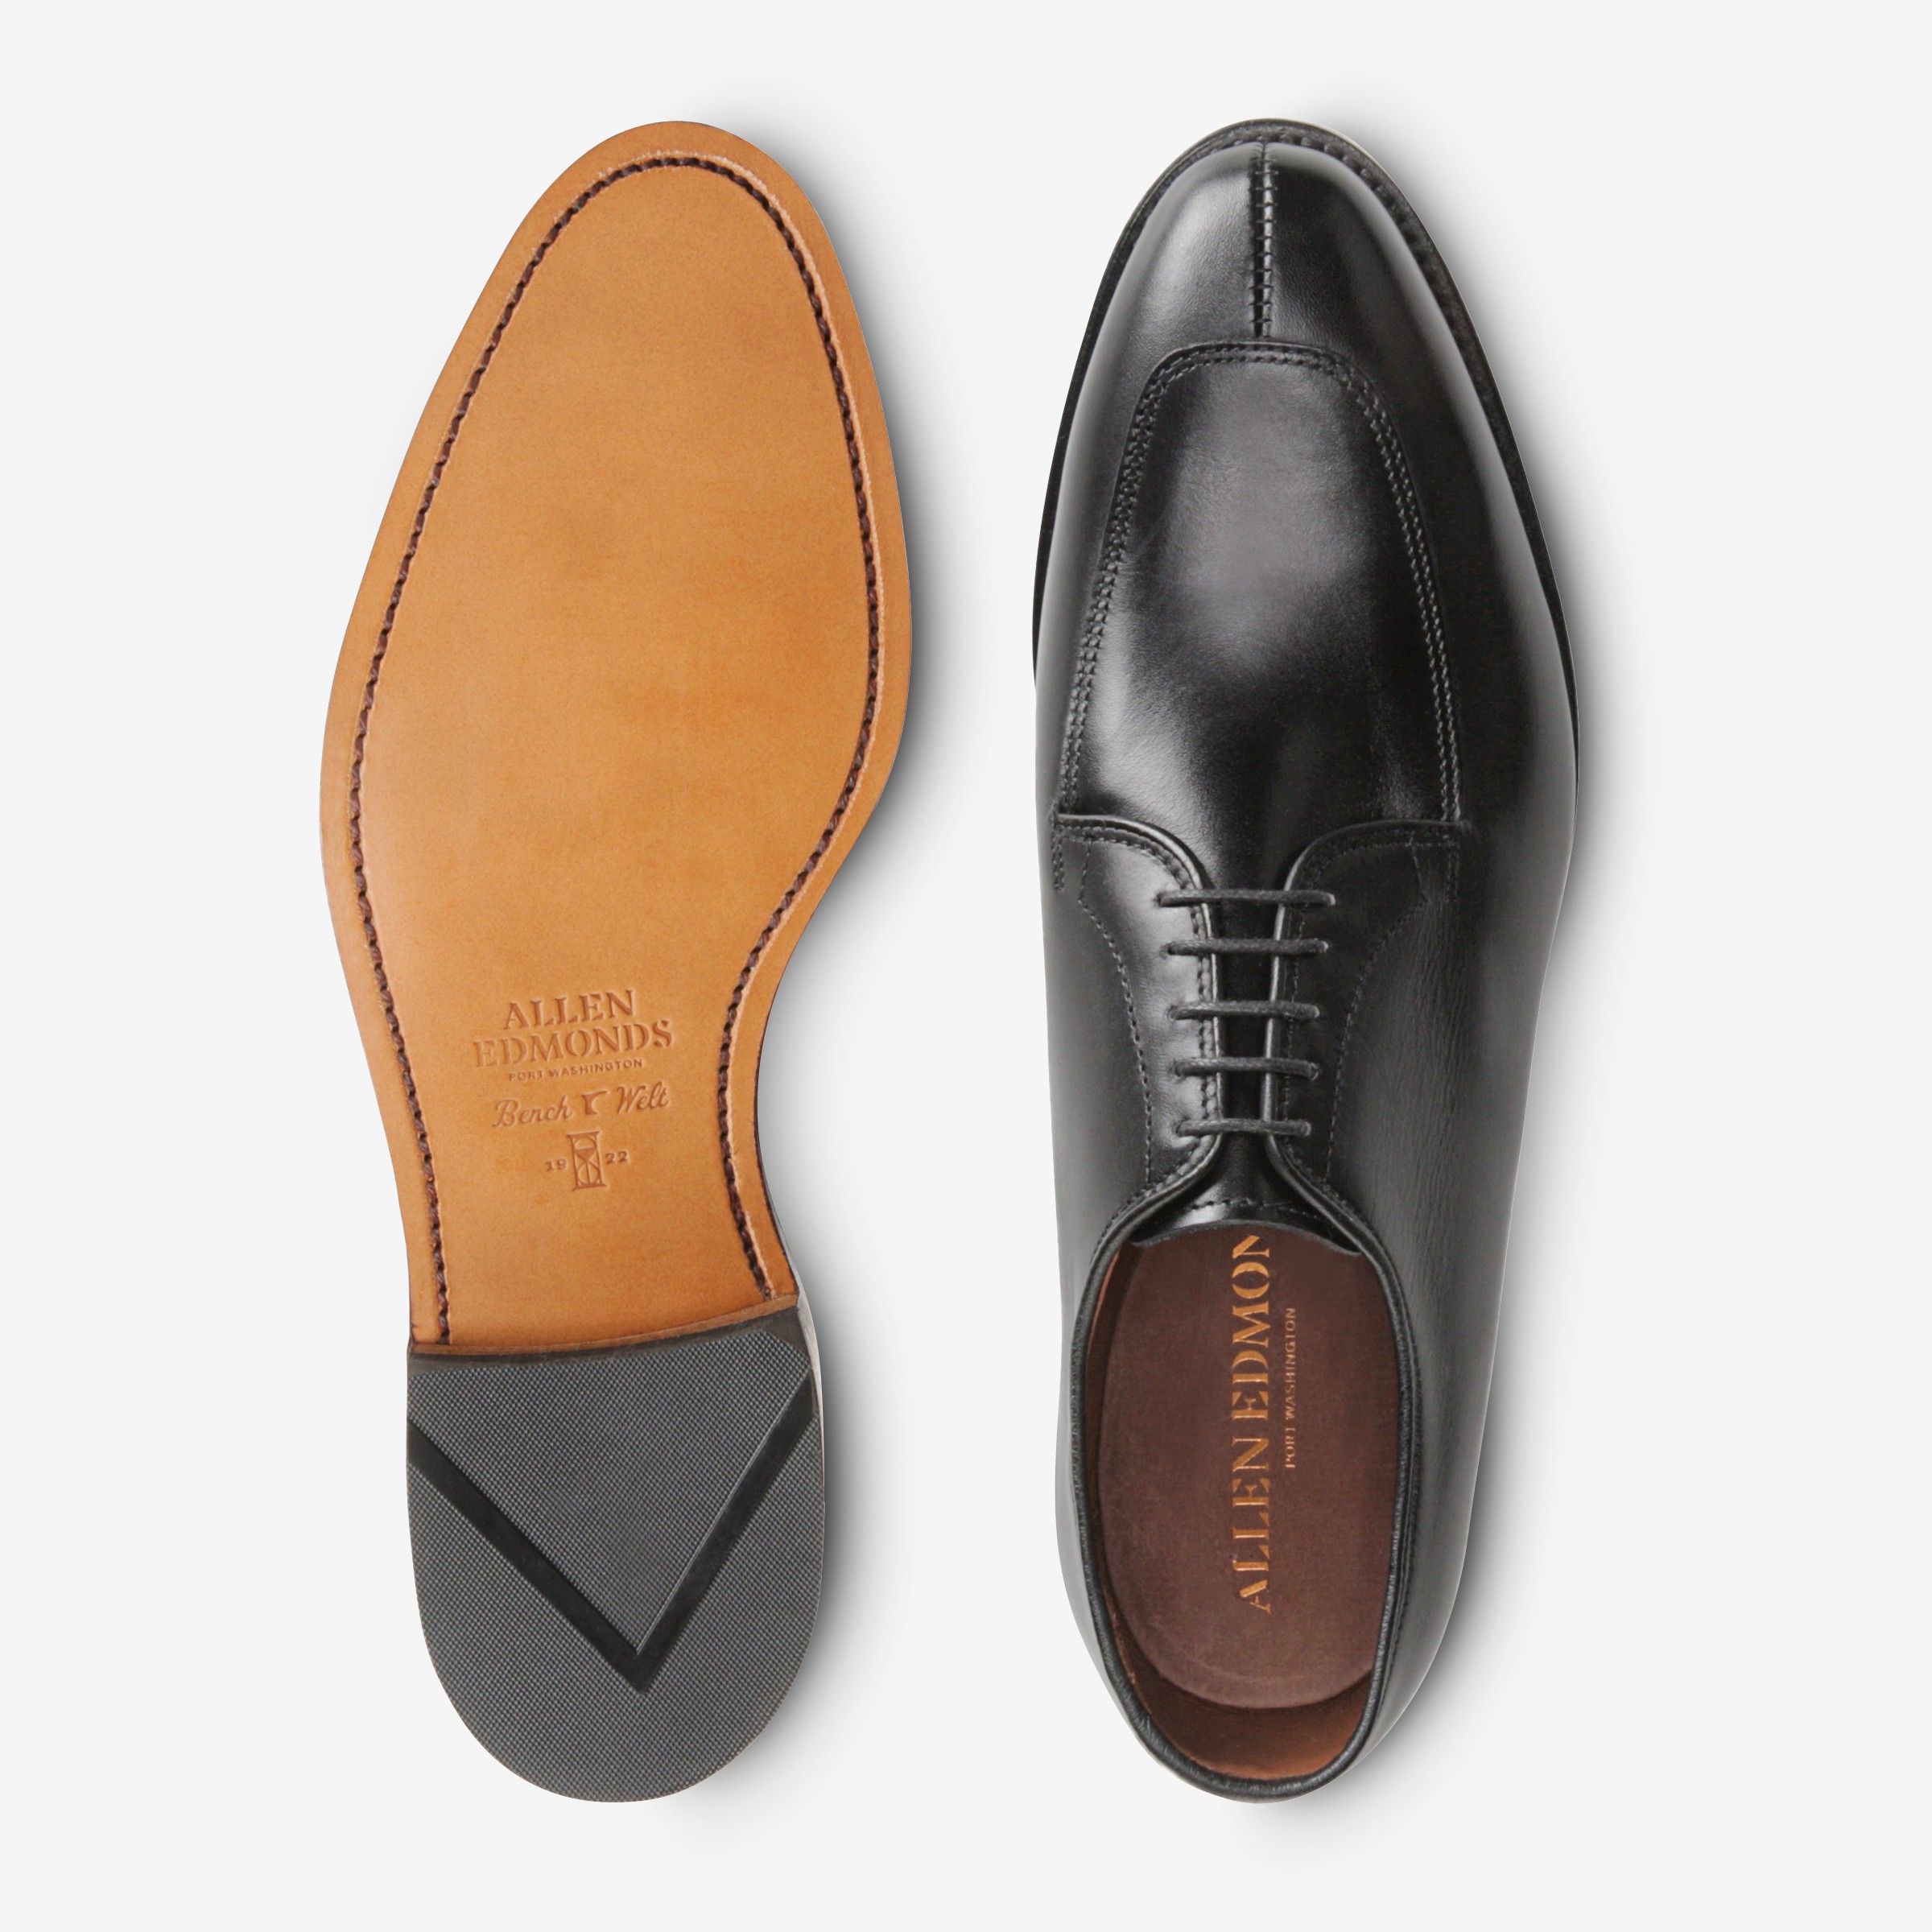 Allen Edmonds shoes w/ colored laces | Allen edmonds shoes, Dress shoes  men, Oxford shoes